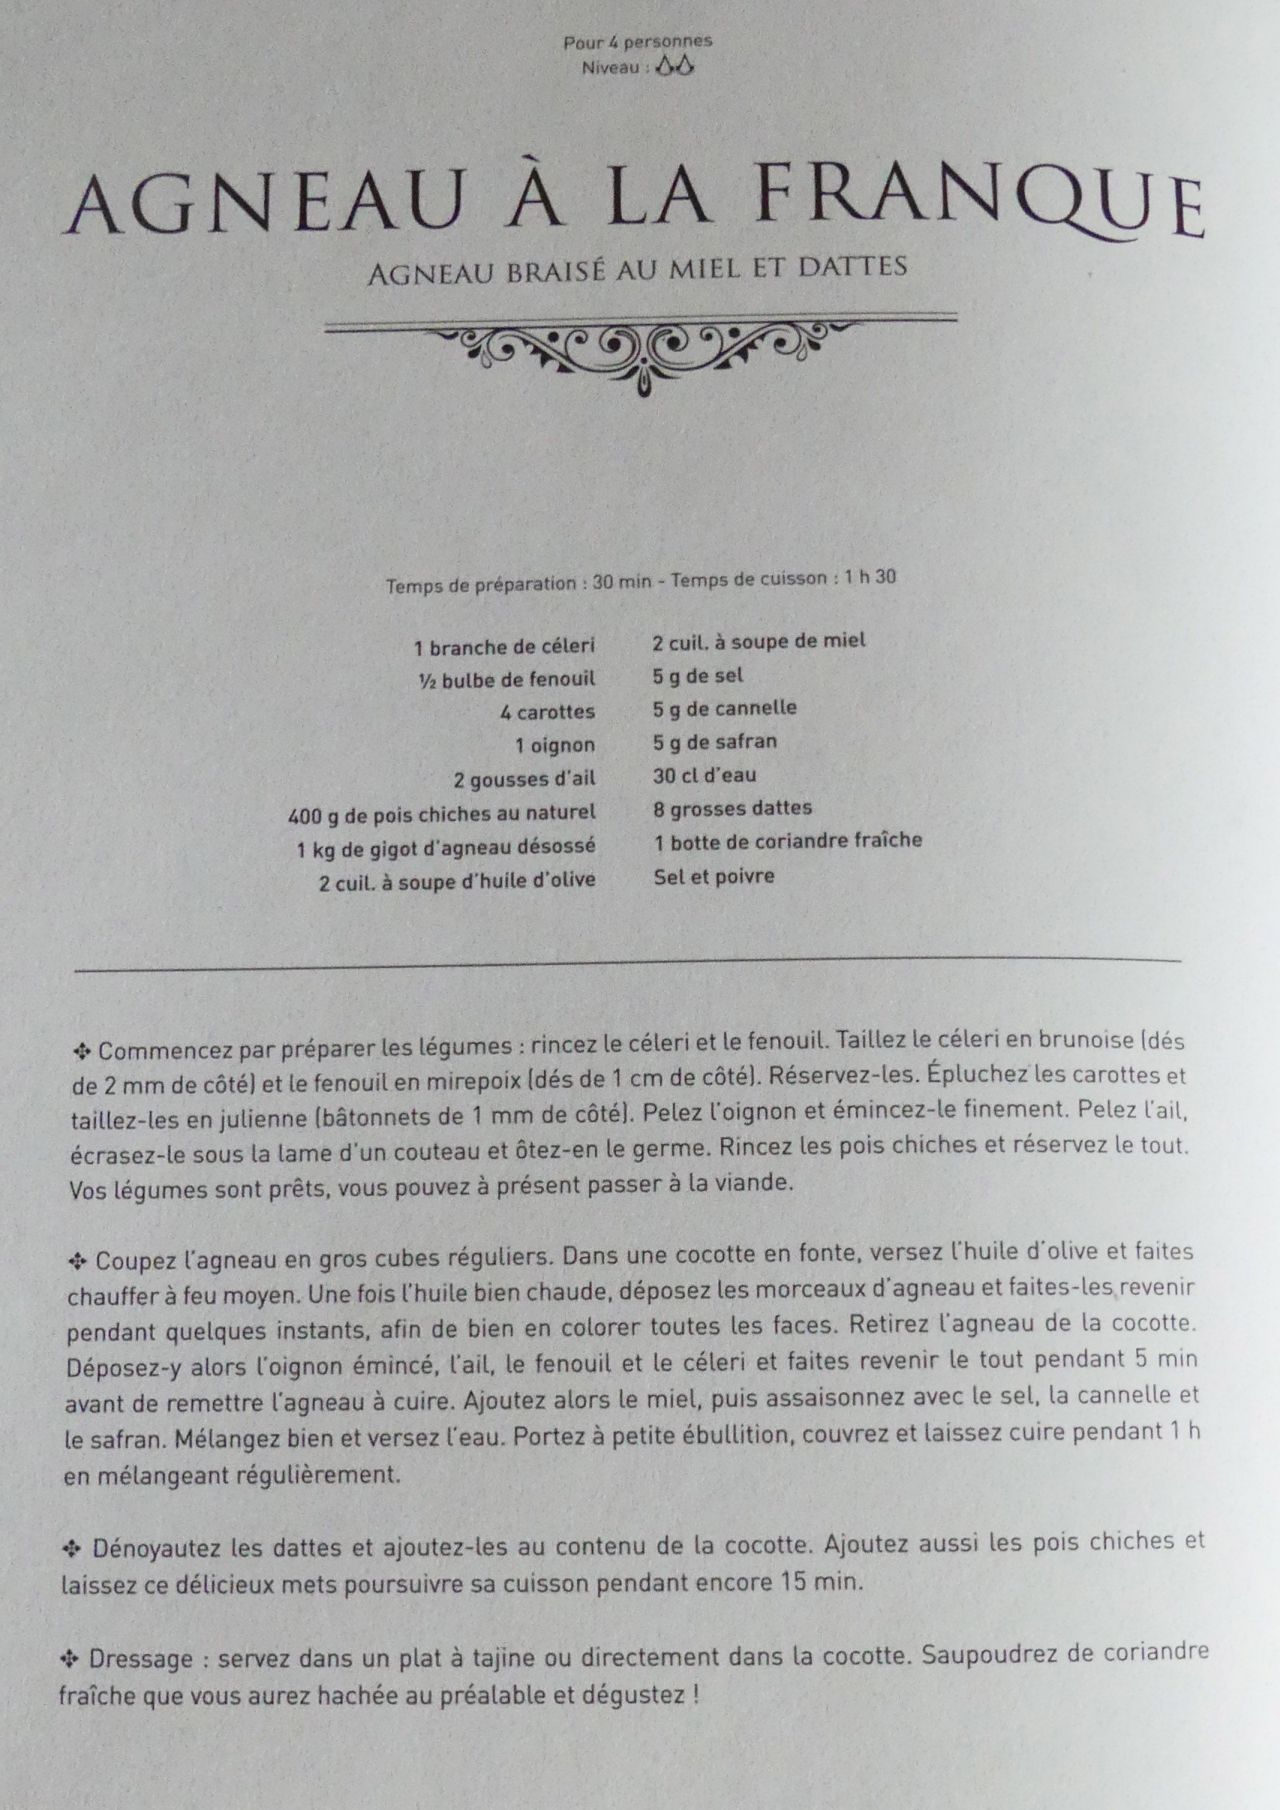 Le Codex Culinaire Assassin's Creed pour cuisiner comme Ezio, Altair ou Bayek #6